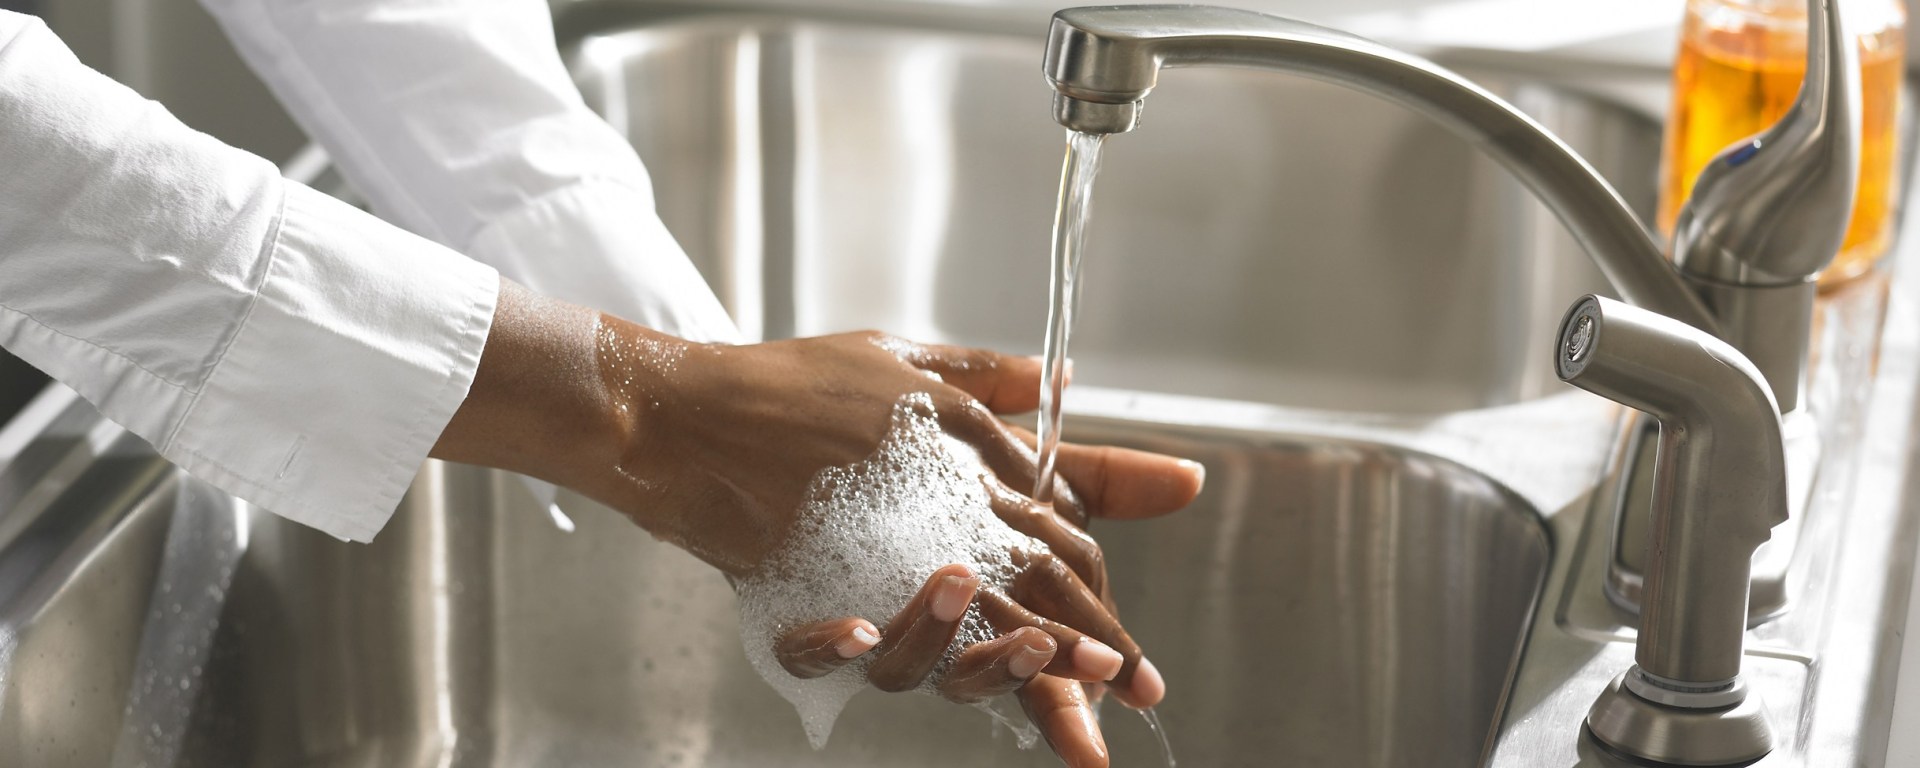 Можно помыть руки. Мыть руки на производстве. Мытье рук на кухне. Мытье рук работники пищевых производств. Санитария и гигиена фото.